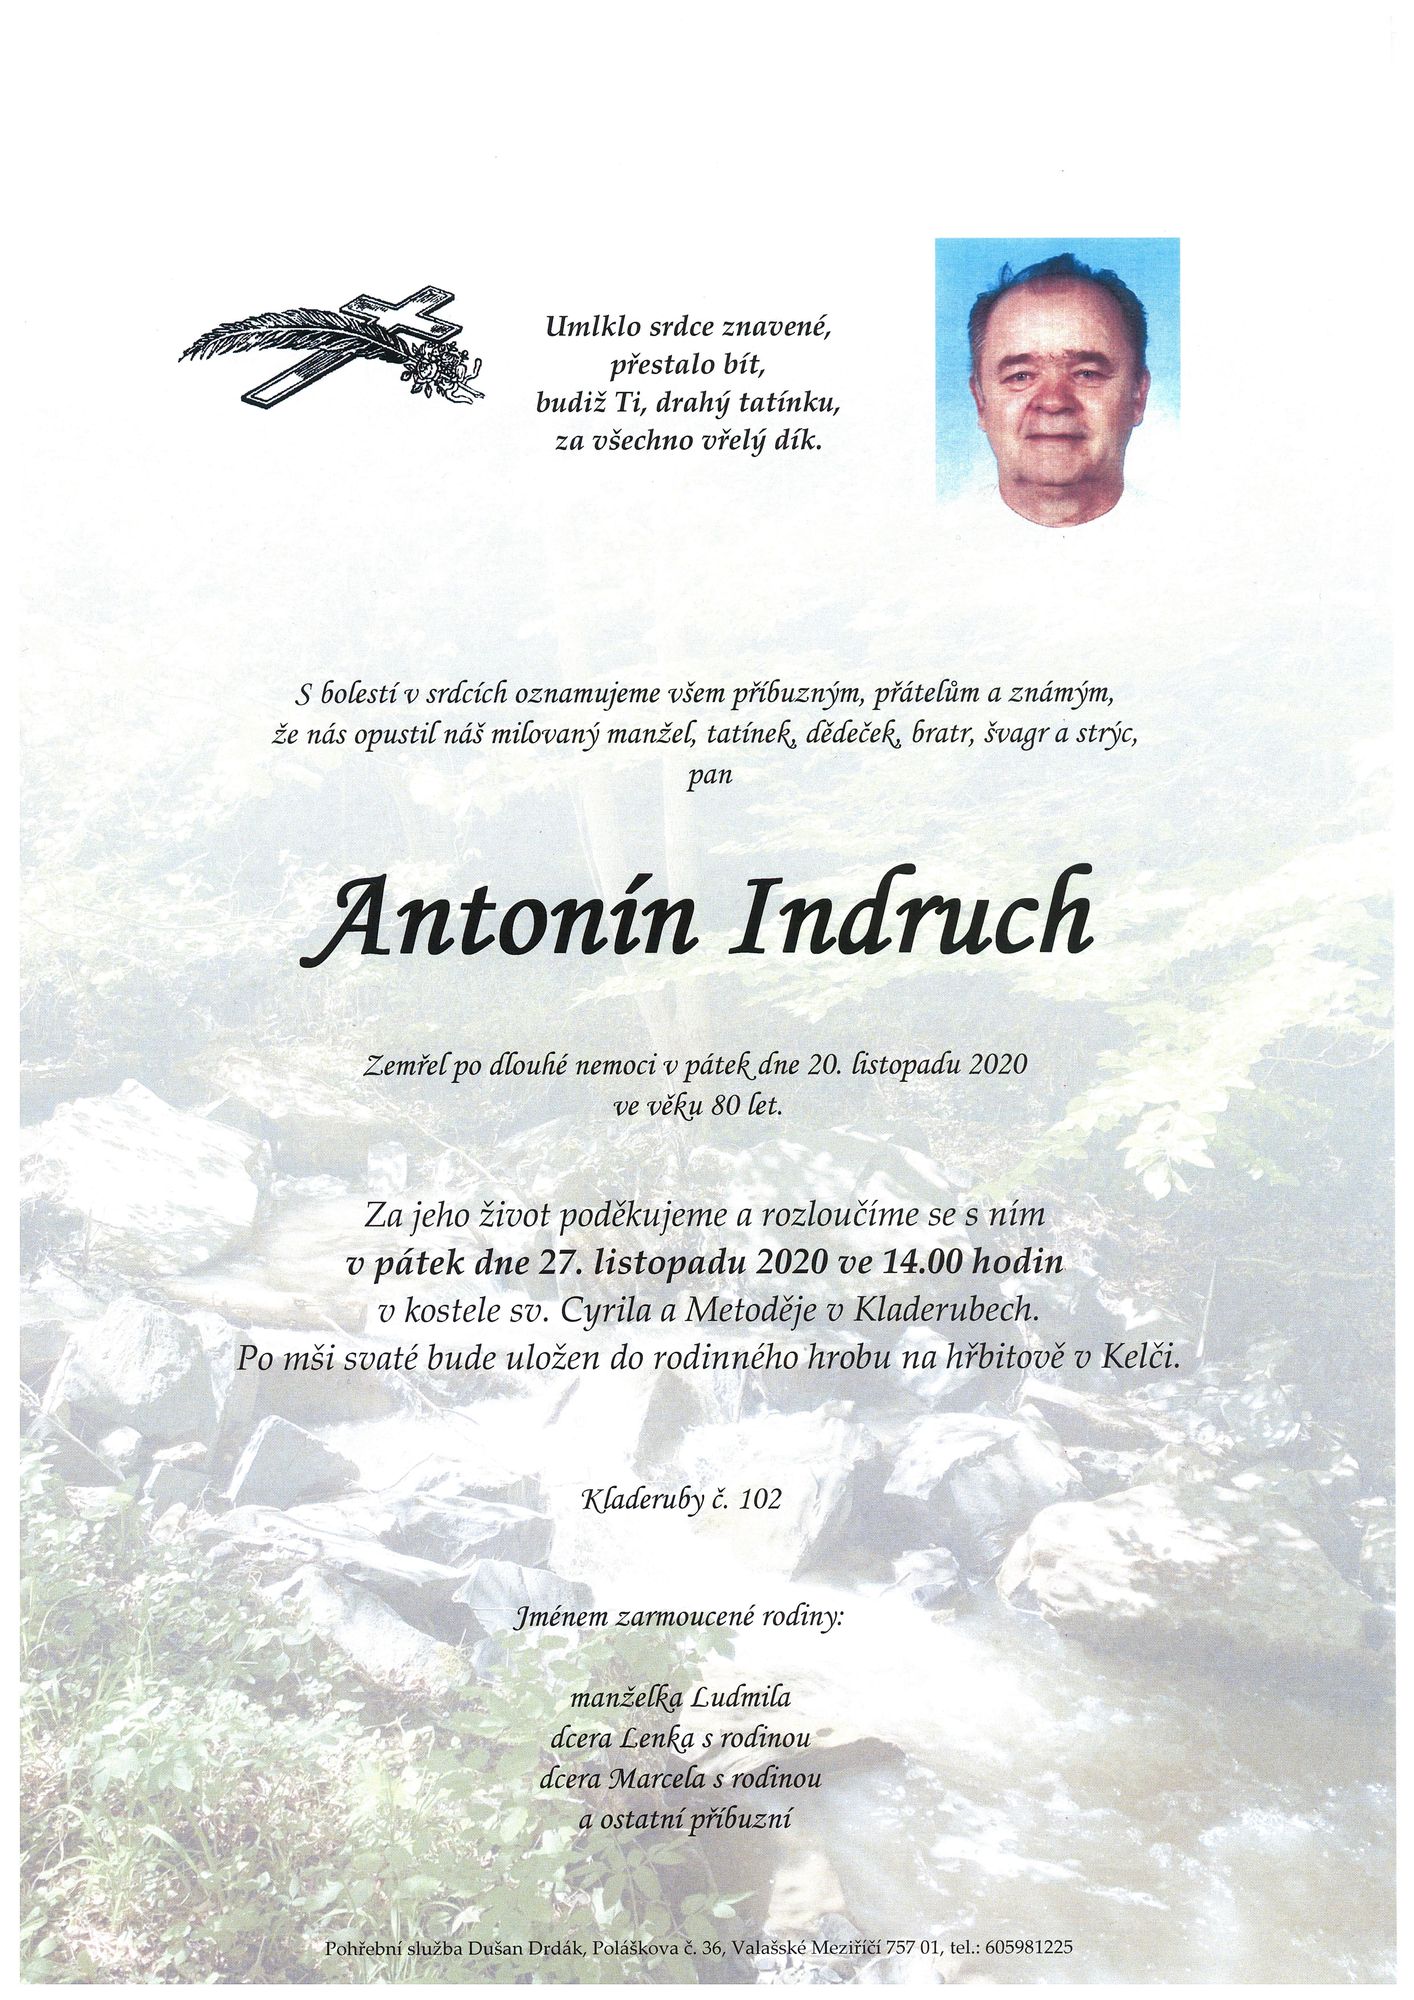 Antonín Indruch